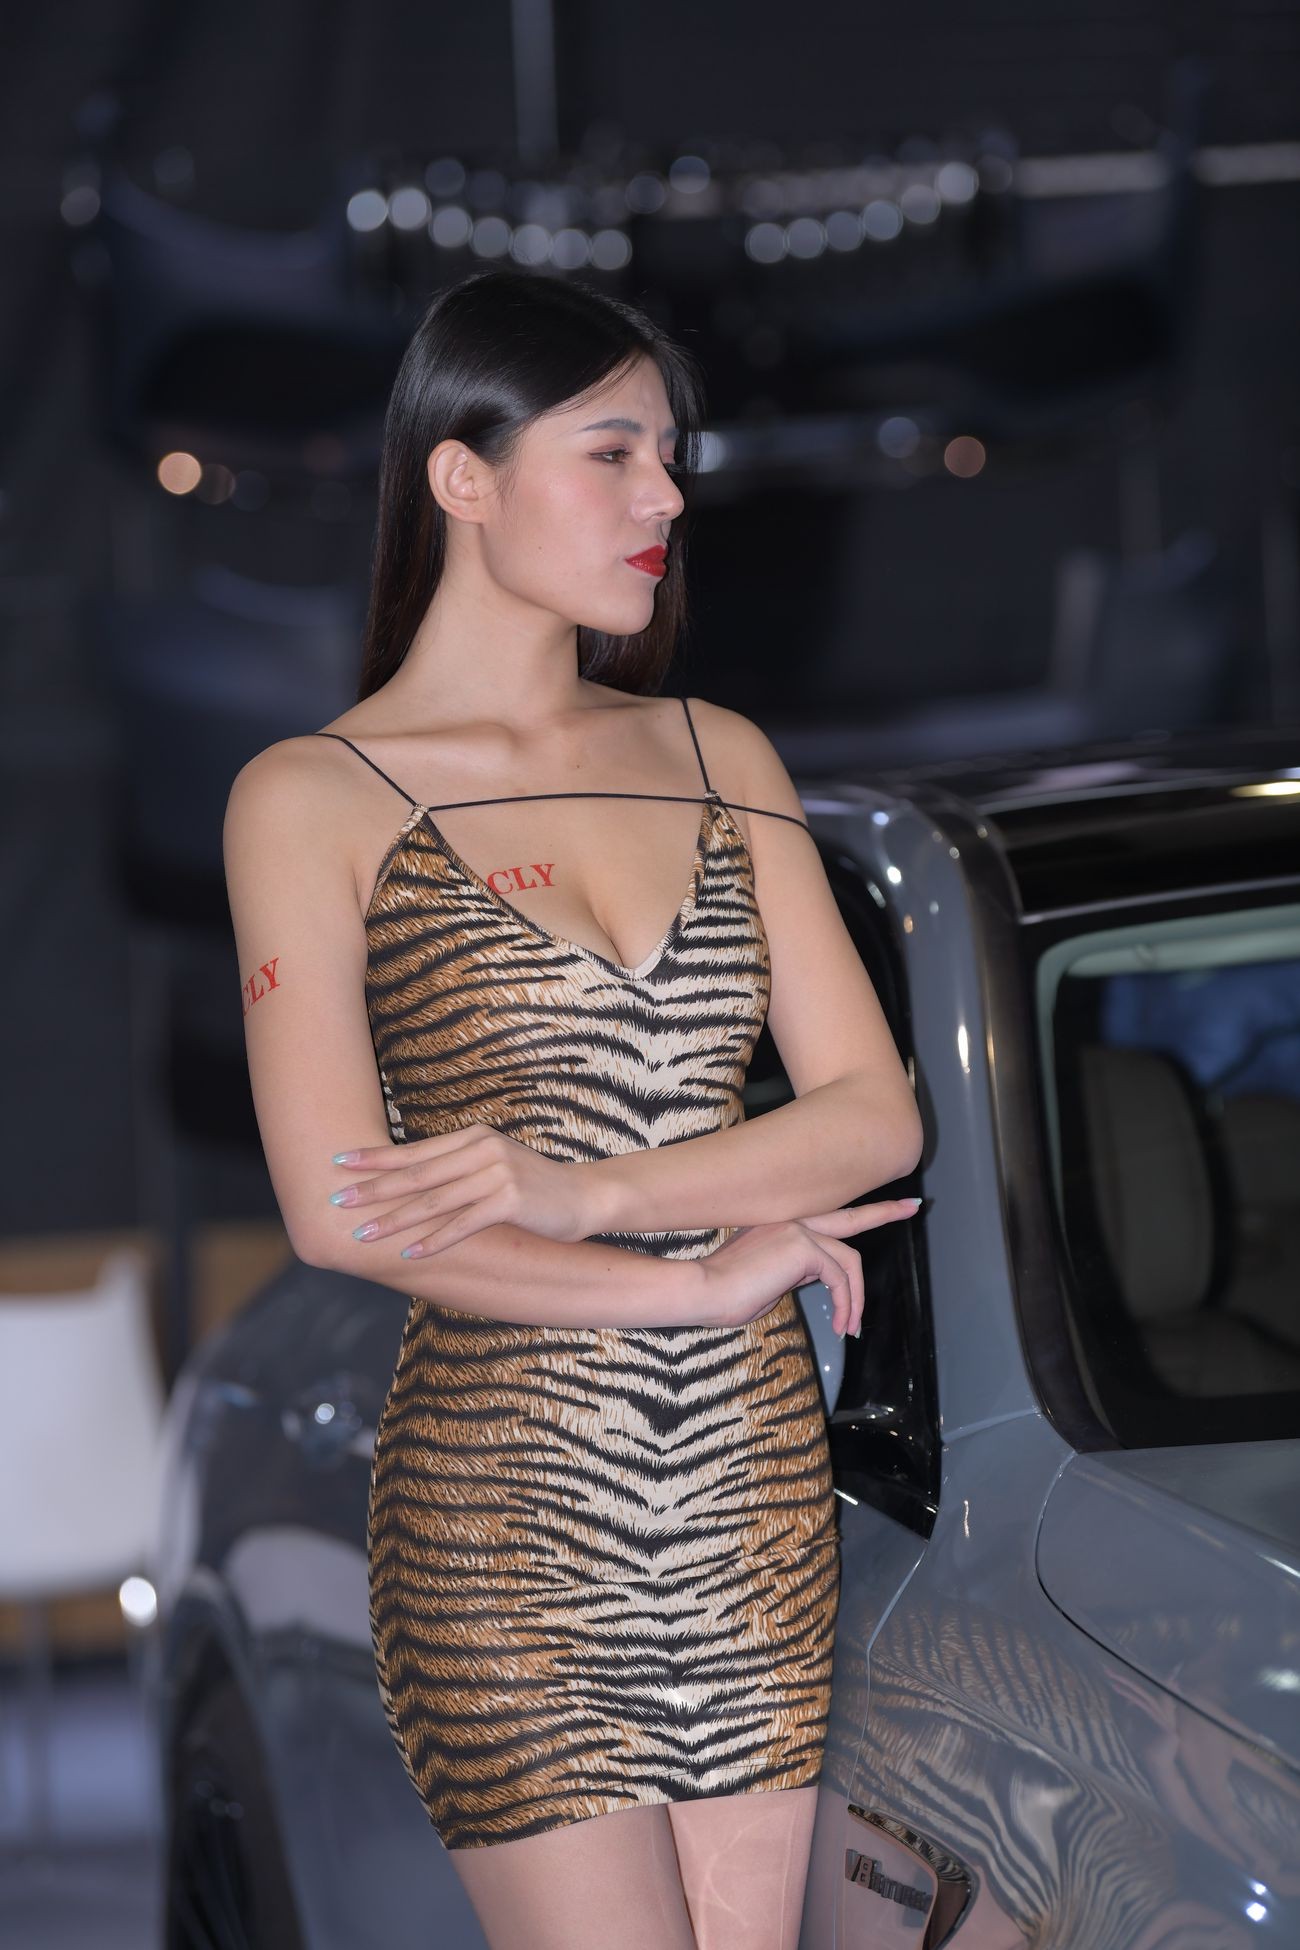 视觉冲击街拍作品性感的豹纹吊带裙美女 (24)